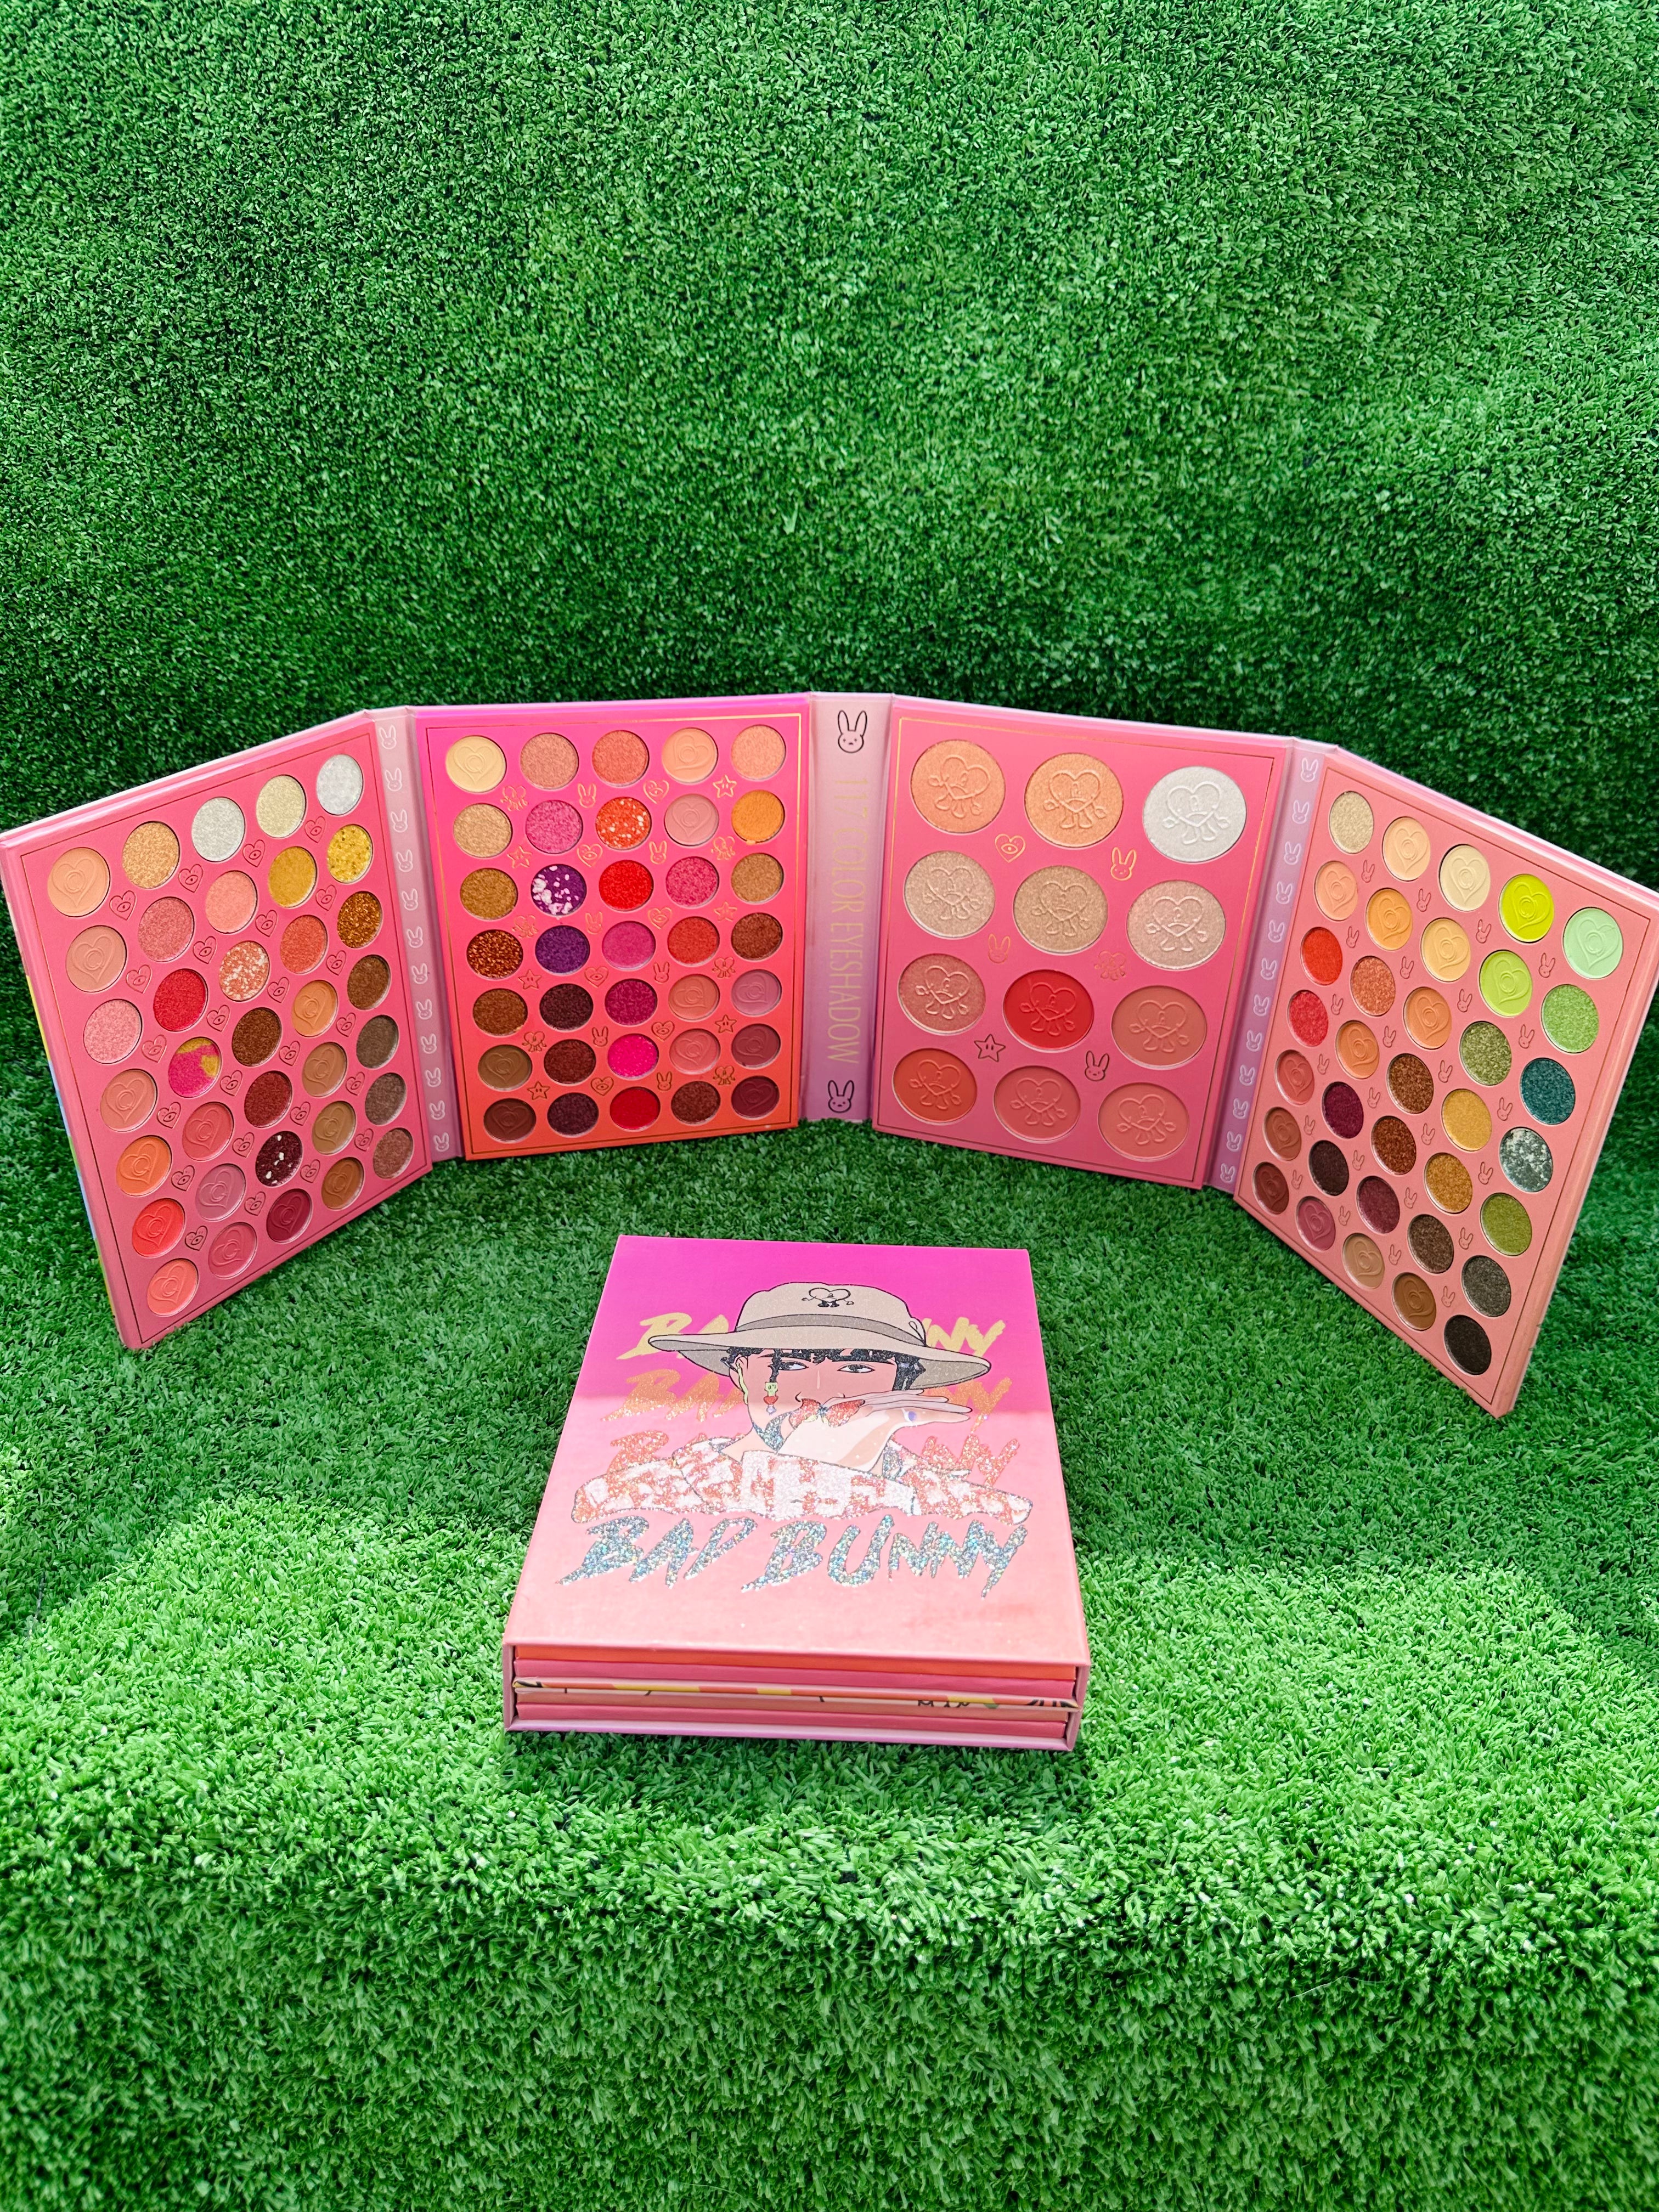 BAD BUNNY NEW Pink(2) | Big makeup palette |eyeshadow